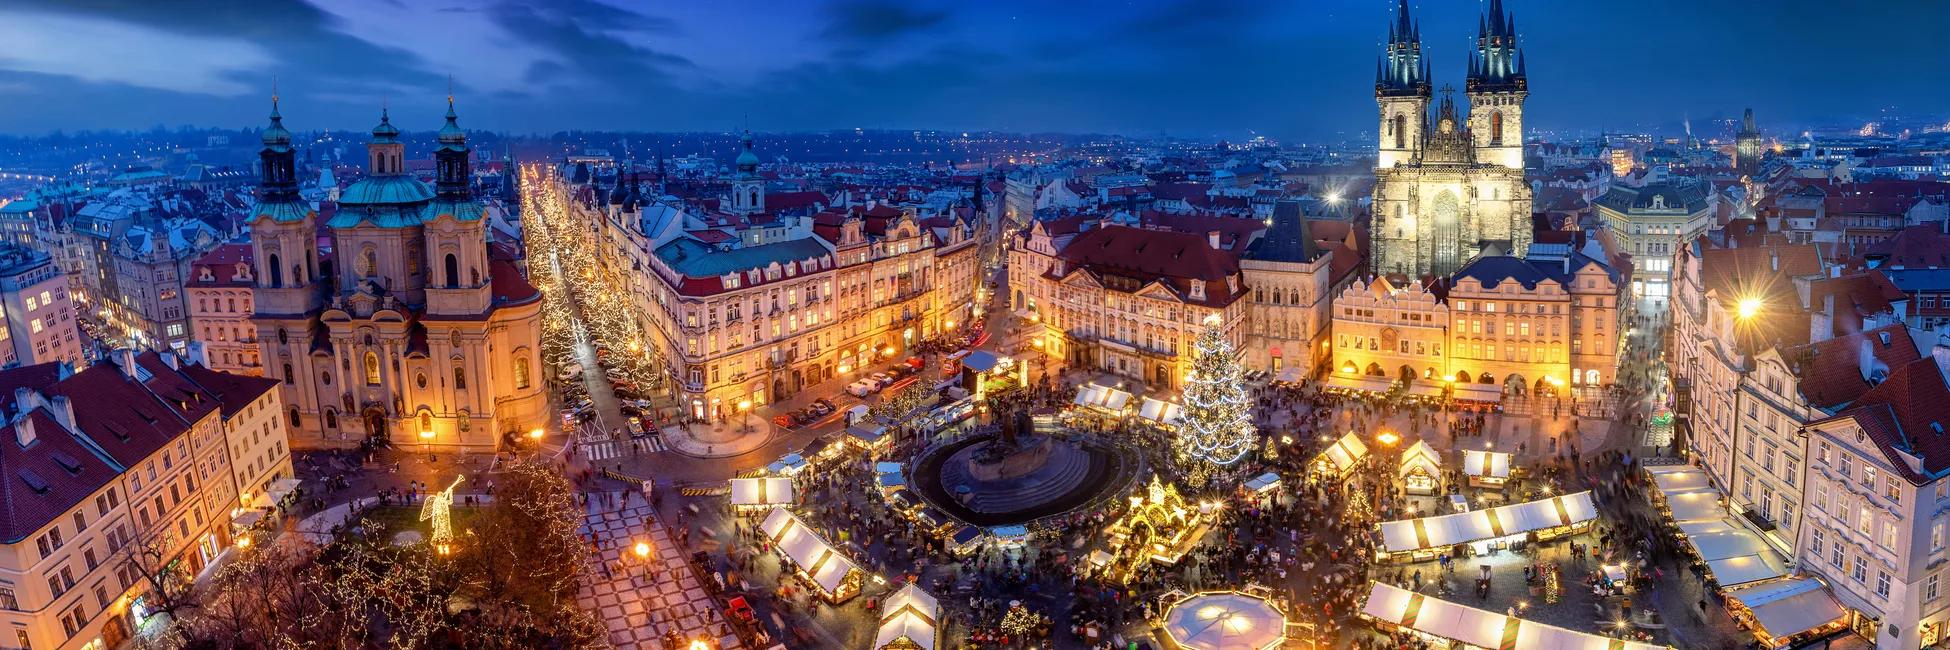 Le grand marché de Noël de Prague 